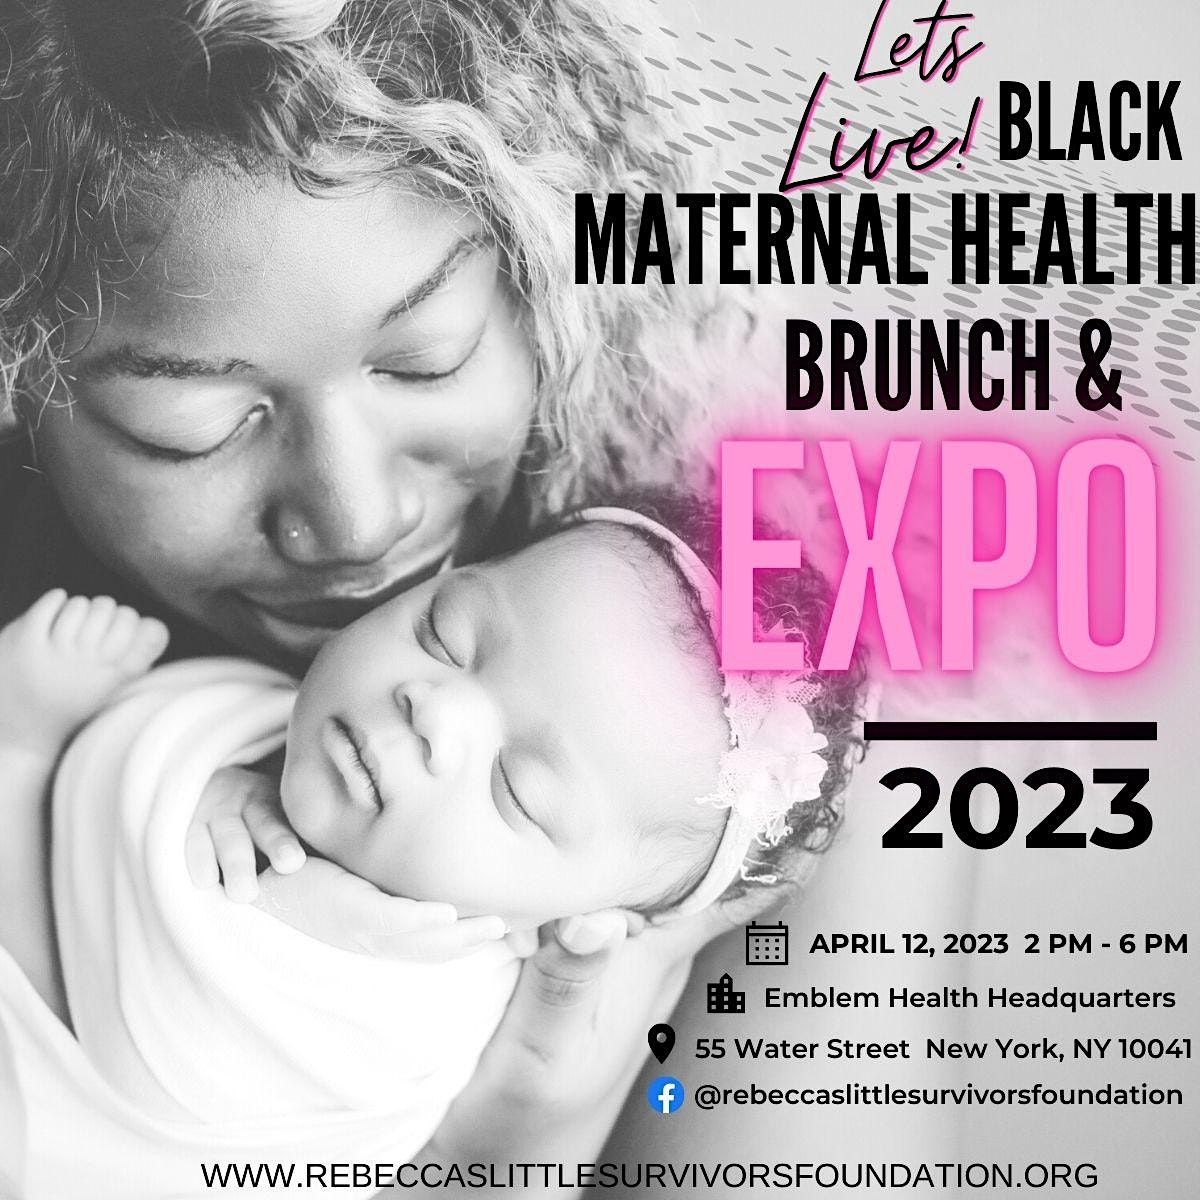 Let's Live: Black Maternal Health Brunch & Expo